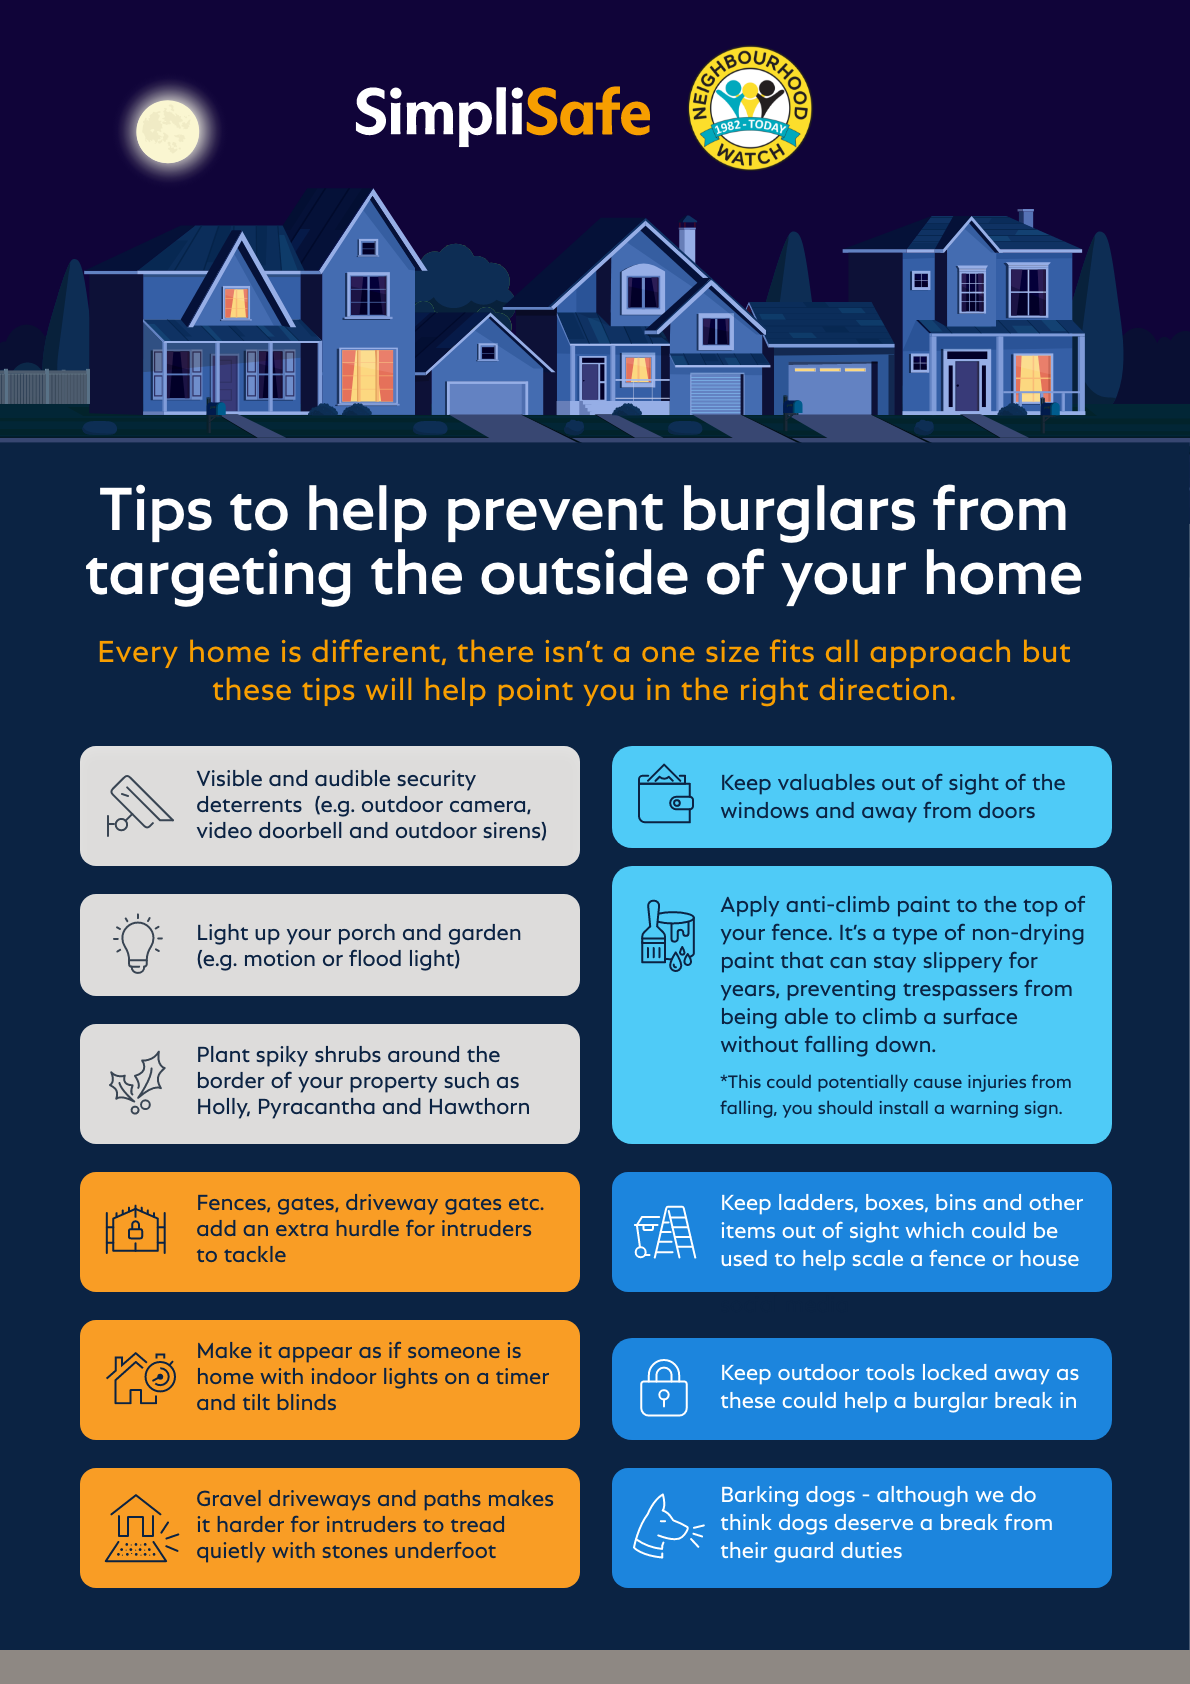 SimpliSafe information on preventing burglars